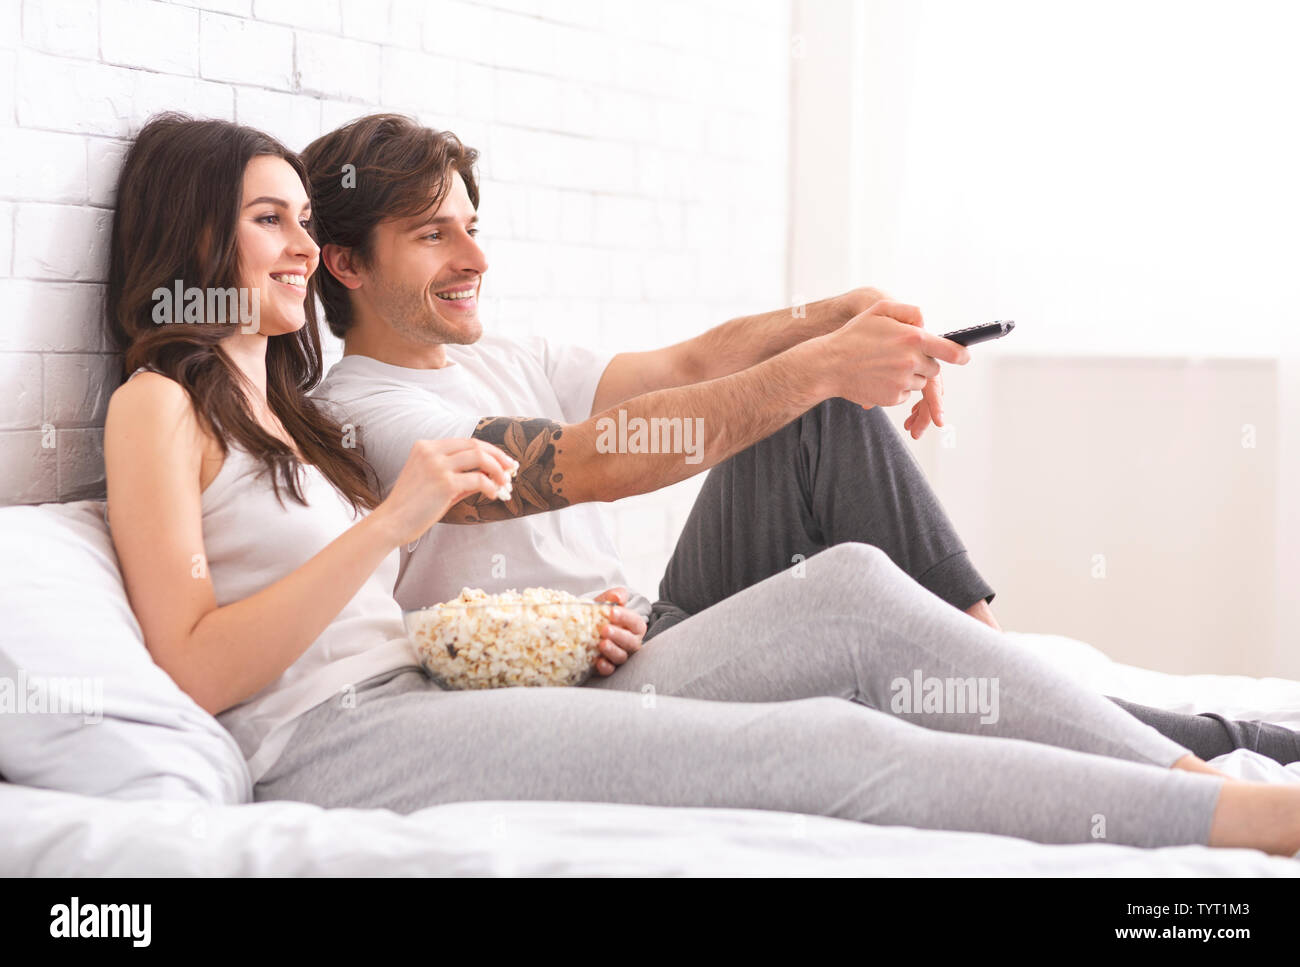 Mann und Frau in der Liebe ansehen Film mit Popcorn im Bett Stockfotografie  - Alamy